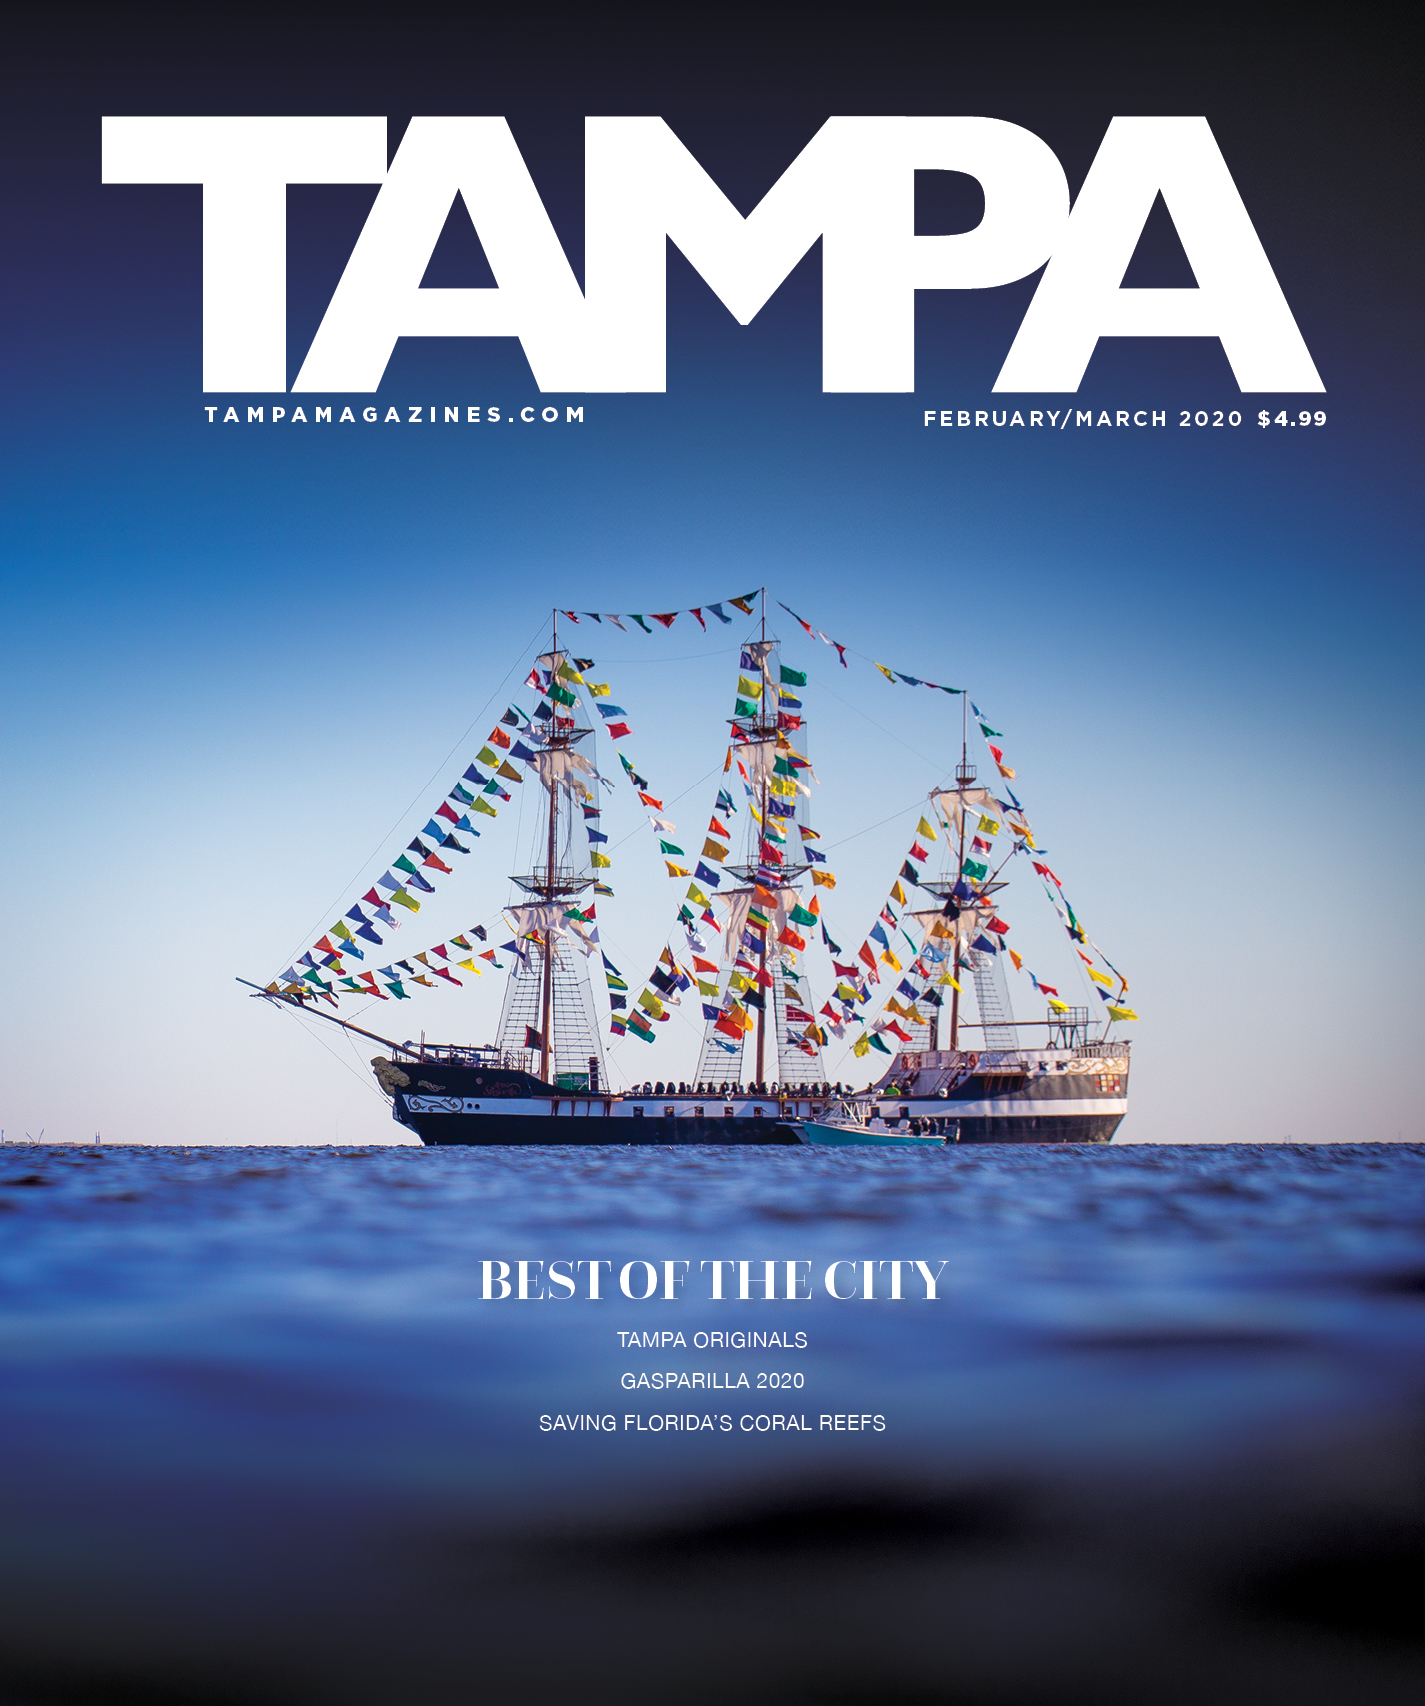 voyage magazine tampa